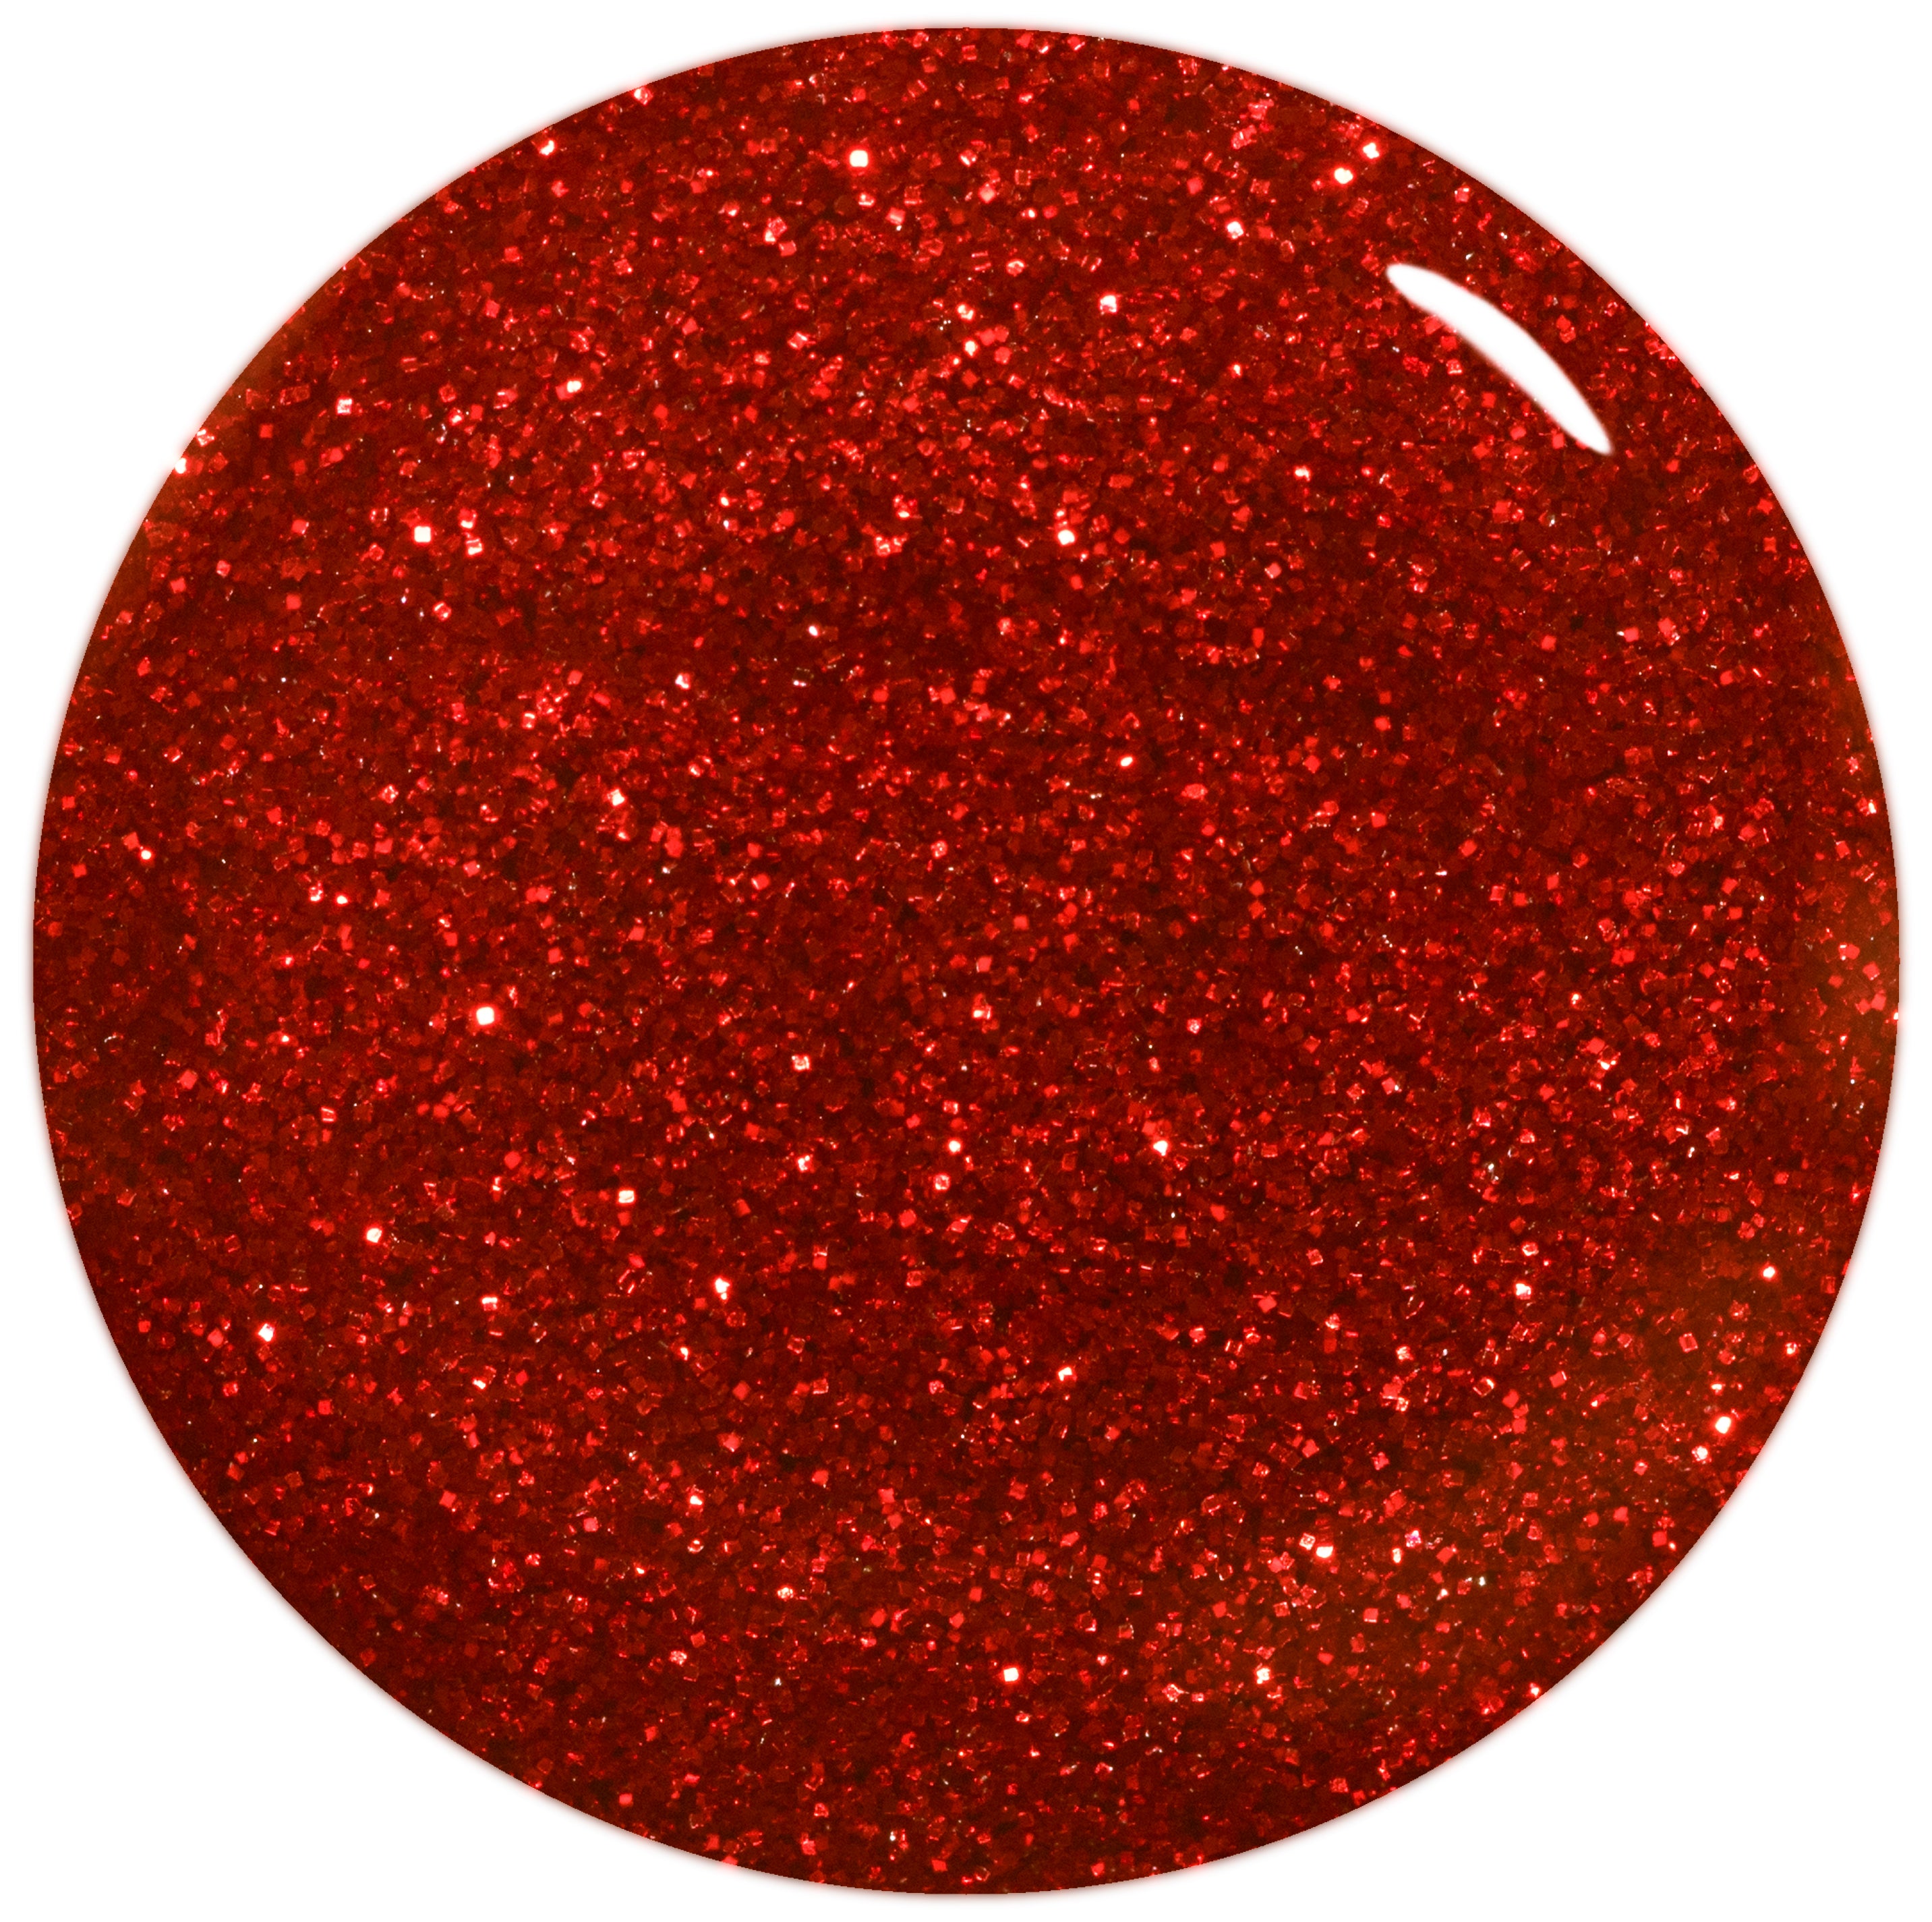 Gellux - Red Hot Ruby (Glitter)